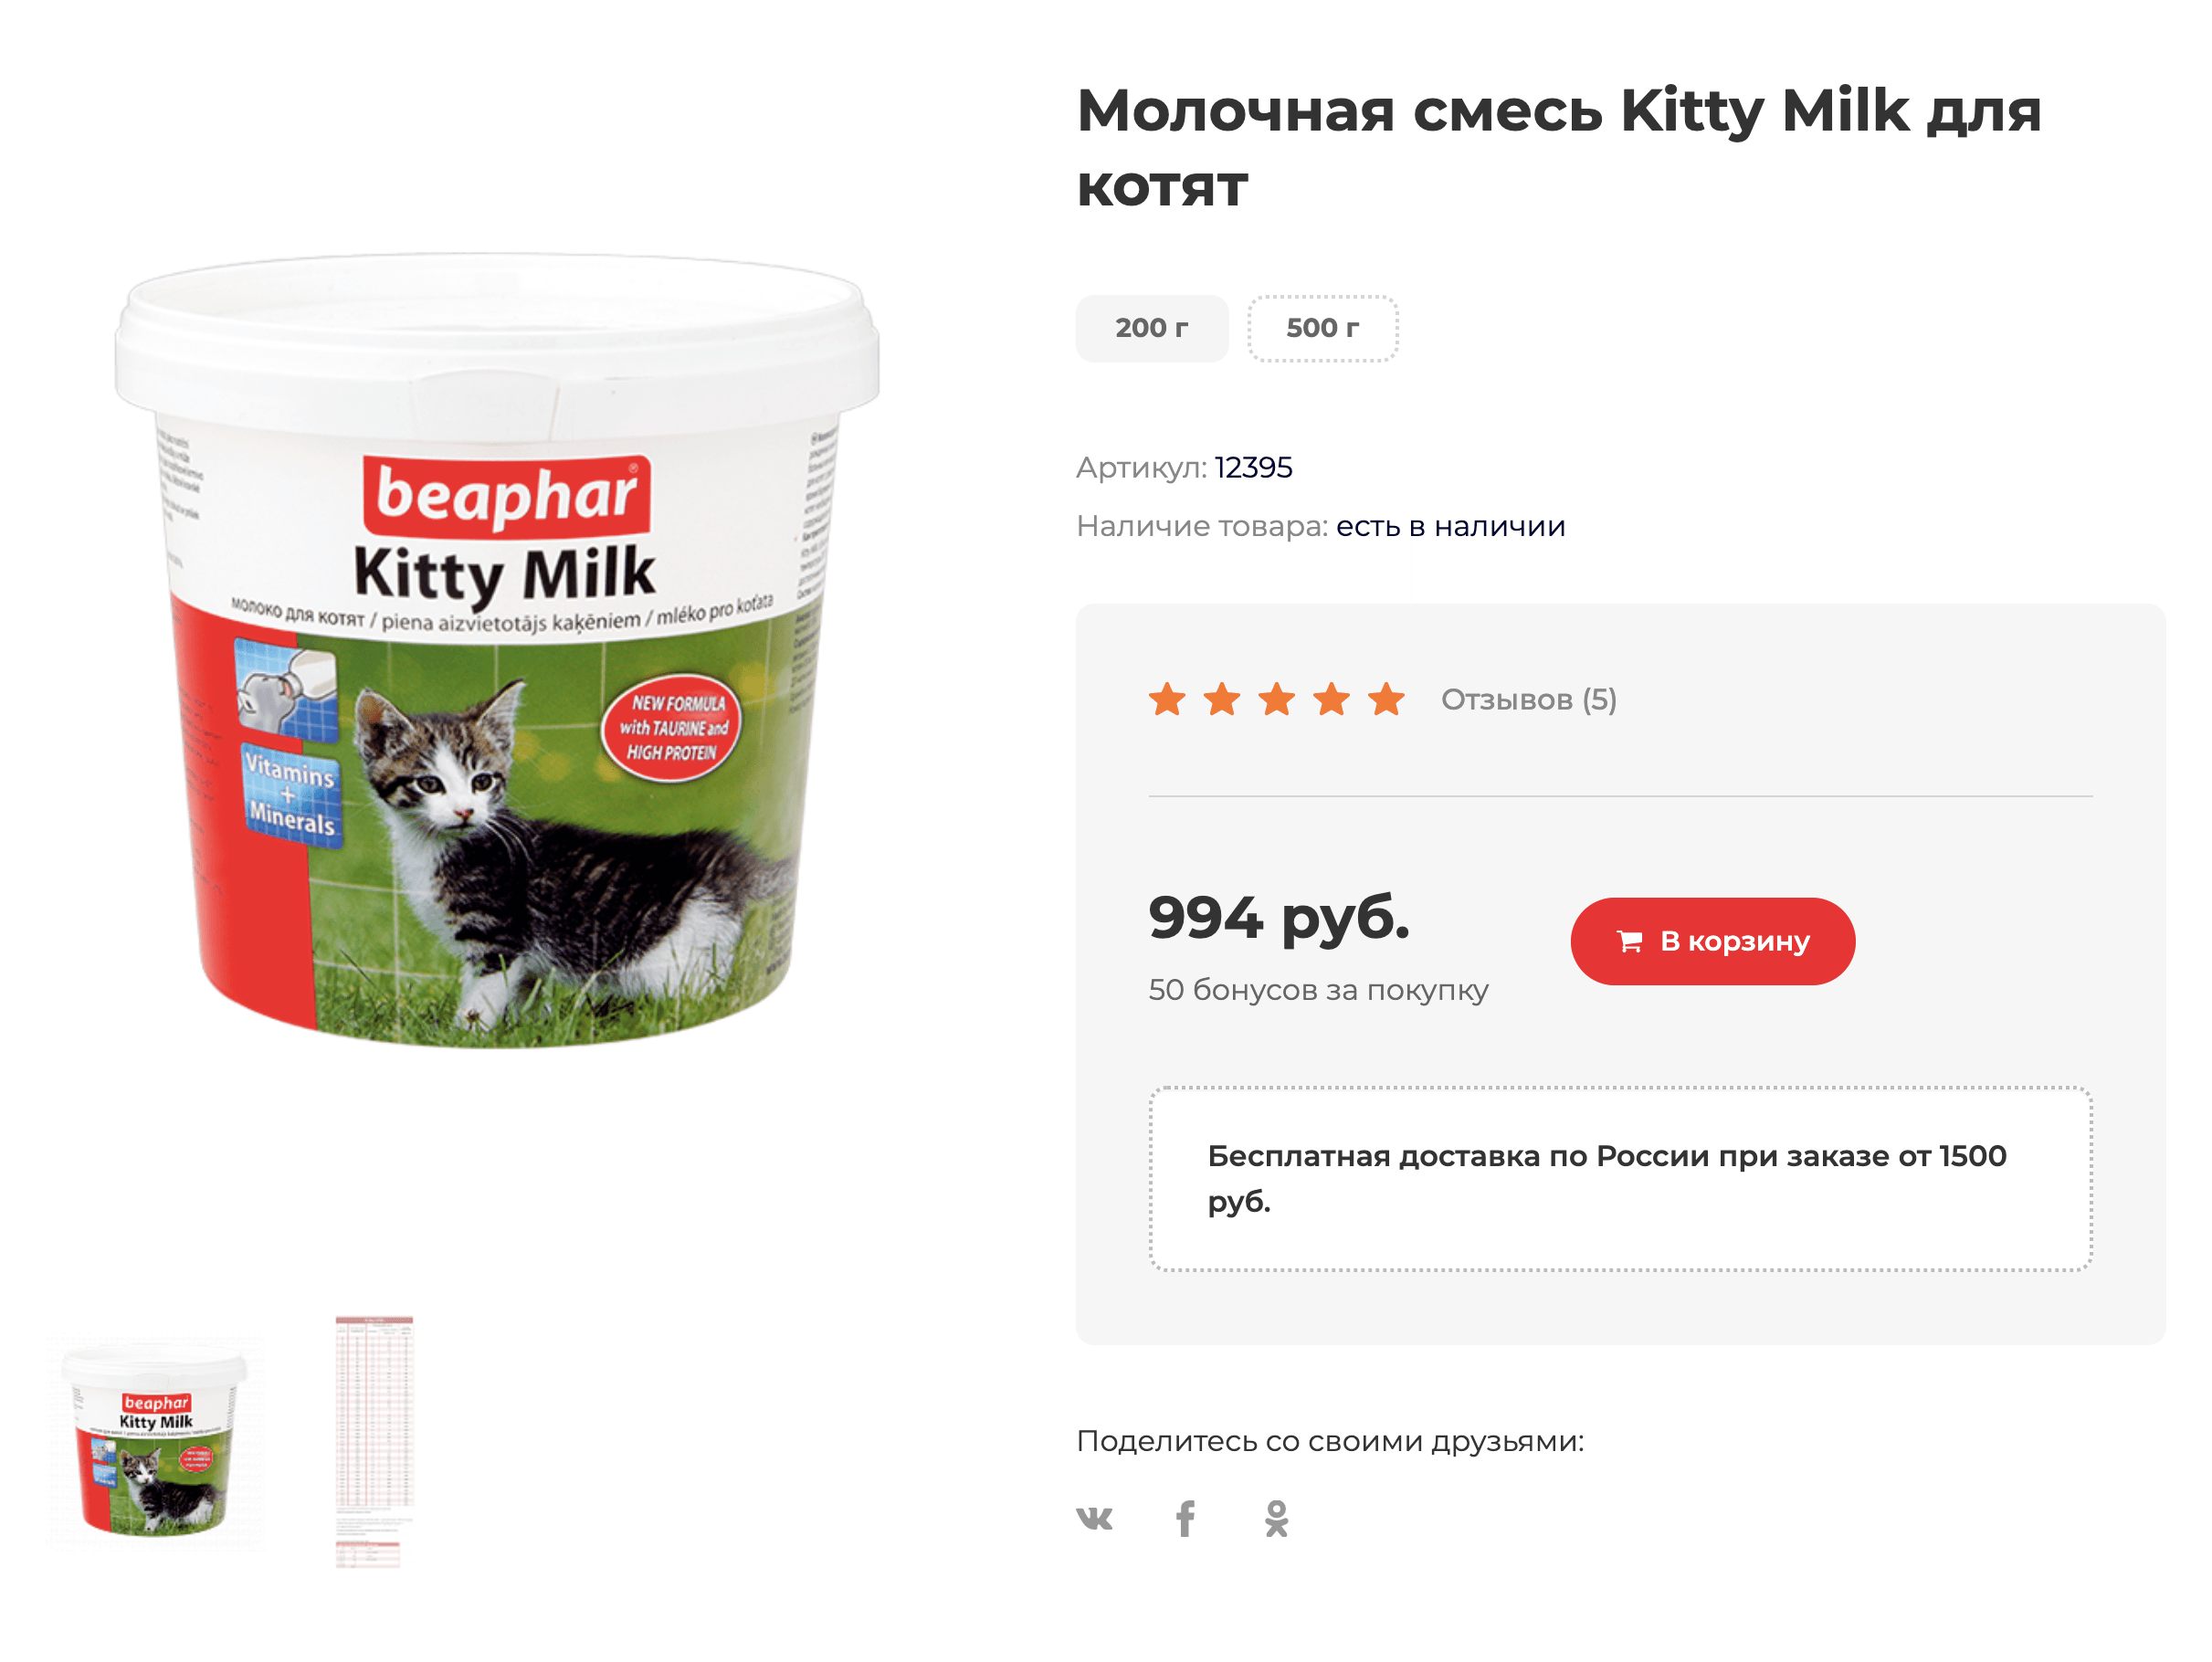 Сухое молоко для котят стоит около 1000 ₽ за упаковку в 200 г